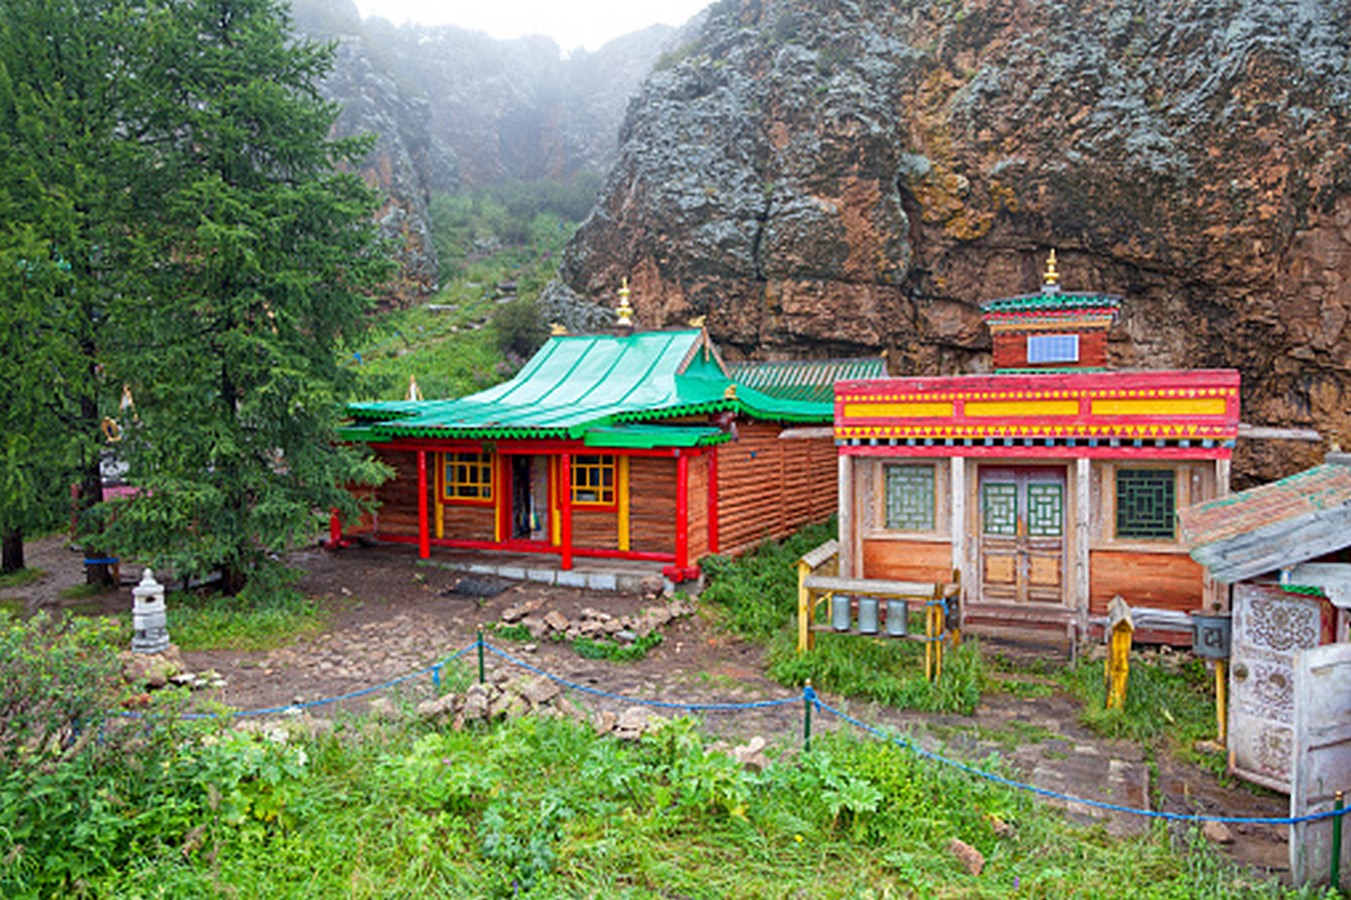 Tuvkhun Monastery - Sheet1